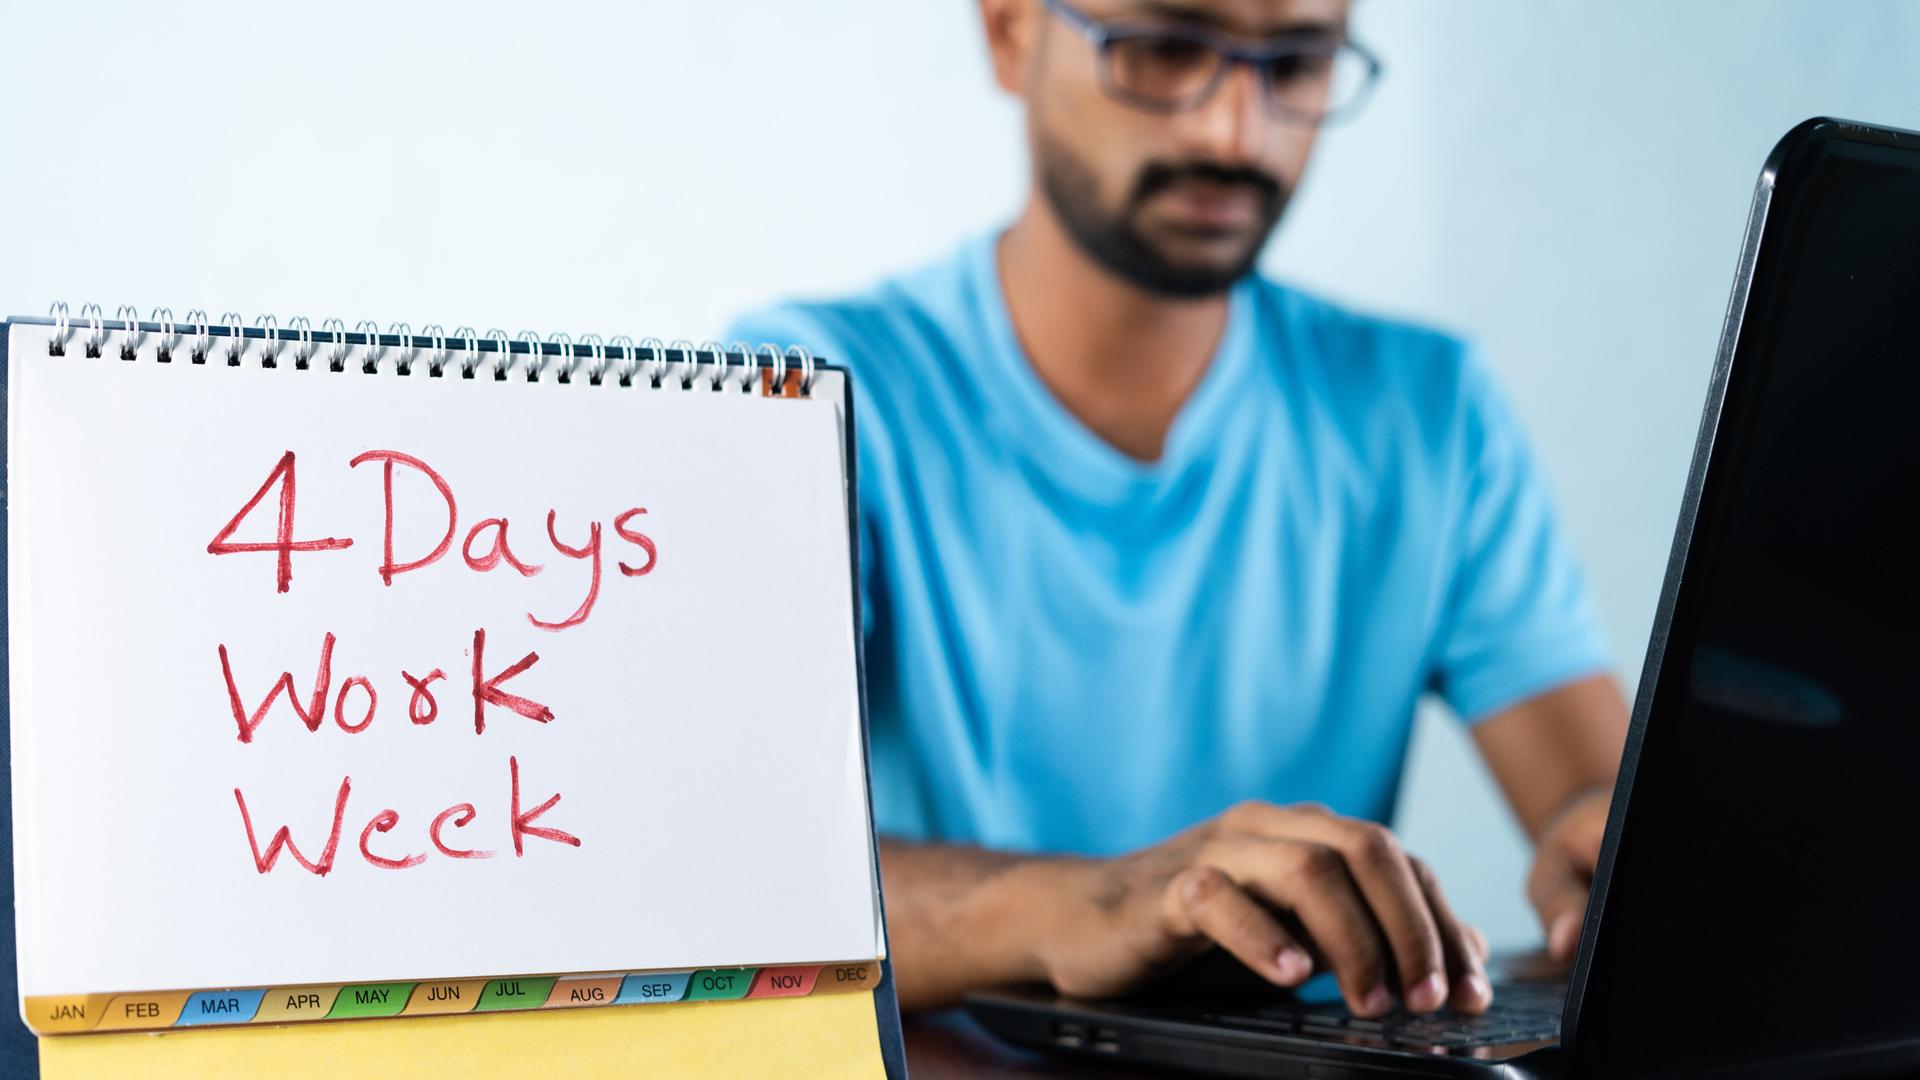 Ein Mann sitzt am Schreibtisch vor einem Laptop bei der Arbeit. Auf seinem Kalender hat er geschrieben "4 Days Work Week".